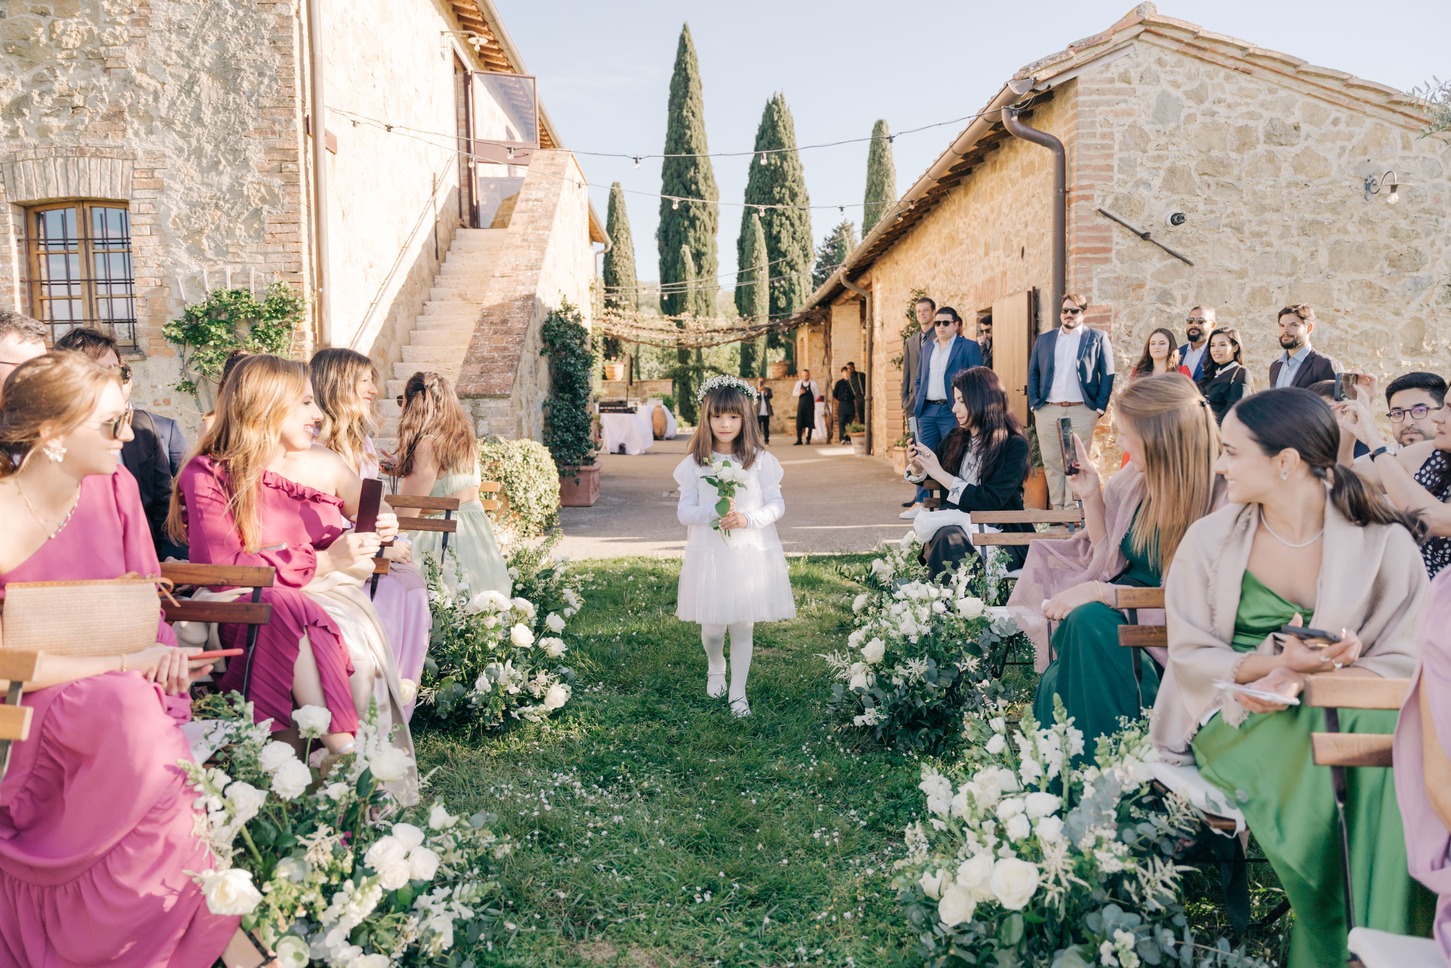 Alt referente a Mini Wedding: A Celebração Intimista e Memorável para o seu Casamento